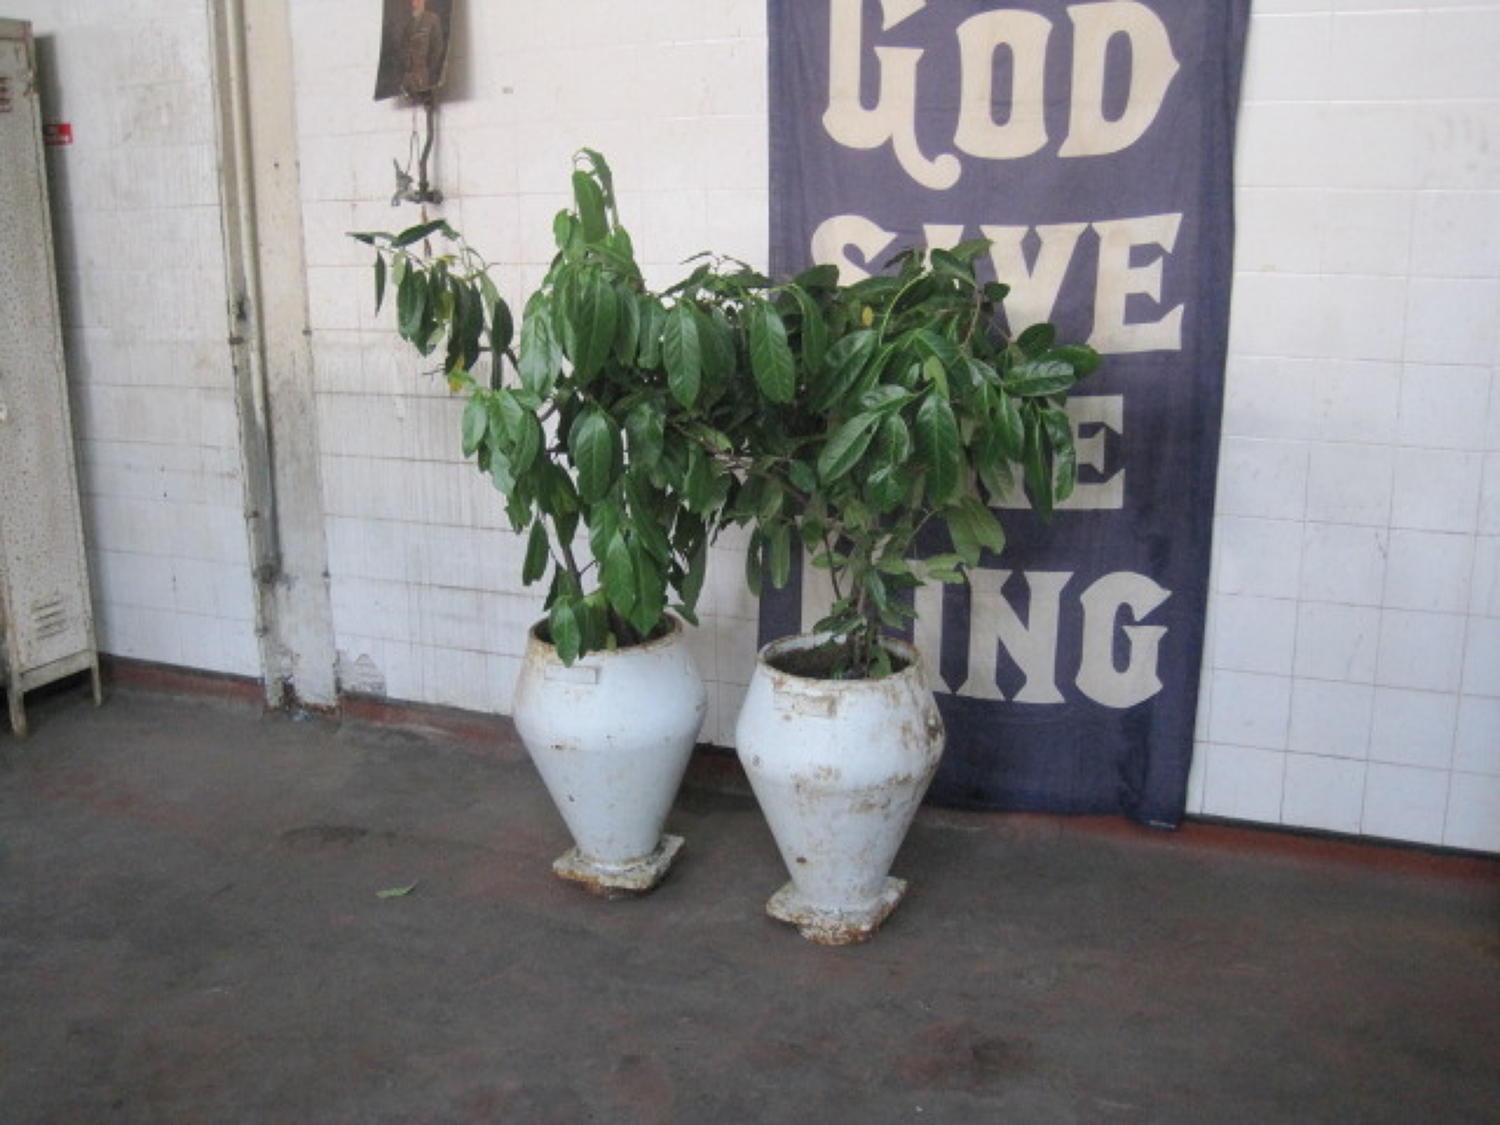 A pair of antique cast iron pots